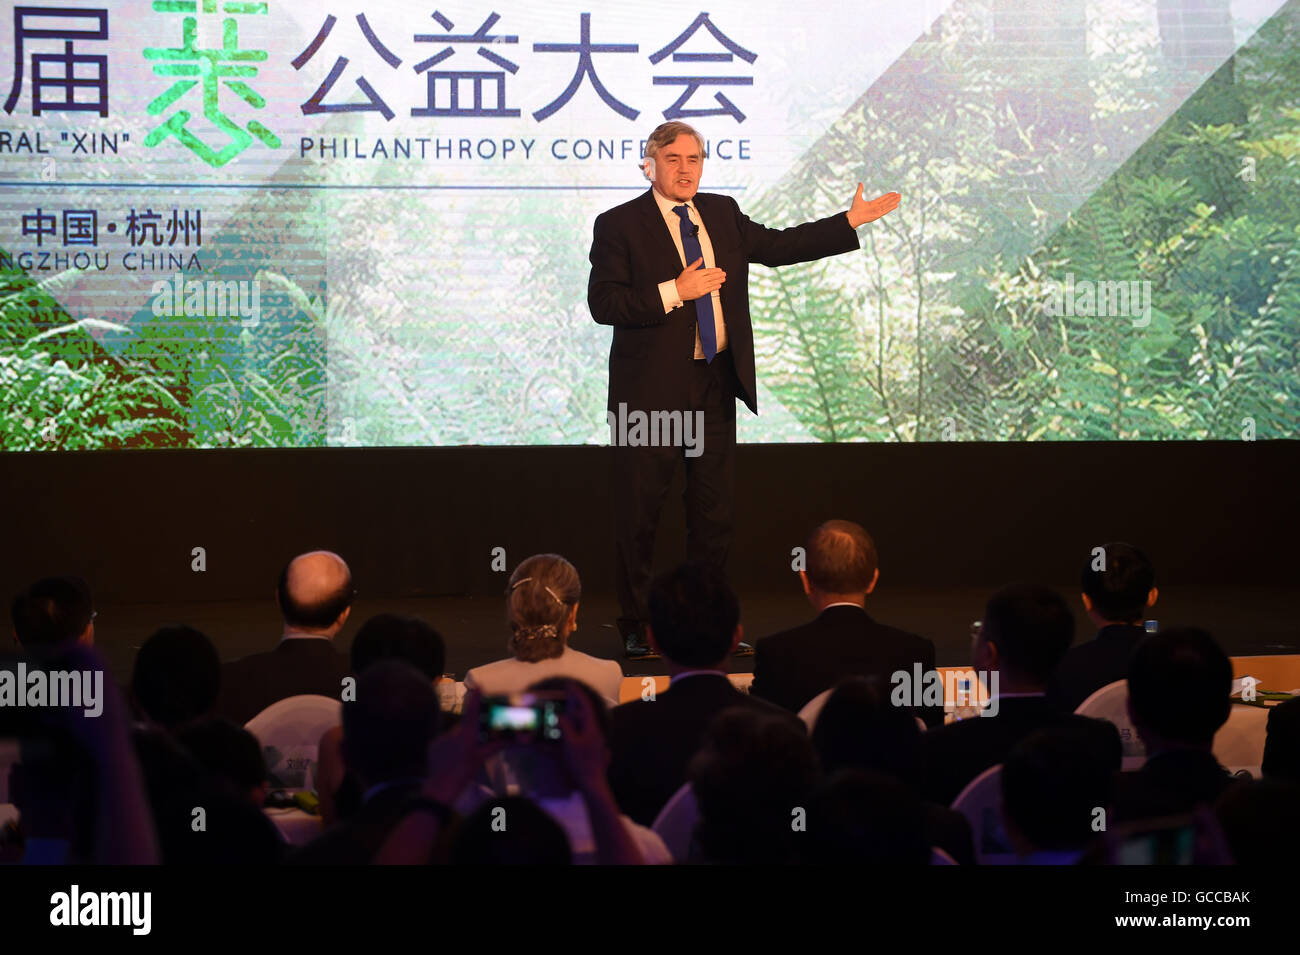 Hangzhou, cinese della Provincia di Zhejiang. 9 Luglio, 2016. L'ex primo ministro britannico Gordon Brown parla durante la cerimonia inaugurale dei XIN filantropia conferenza di Hangzhou, a est della capitale cinese della Provincia di Zhejiang, Luglio 9, 2016. © Wang Dingchang/Xinhua/Alamy Live News Foto Stock